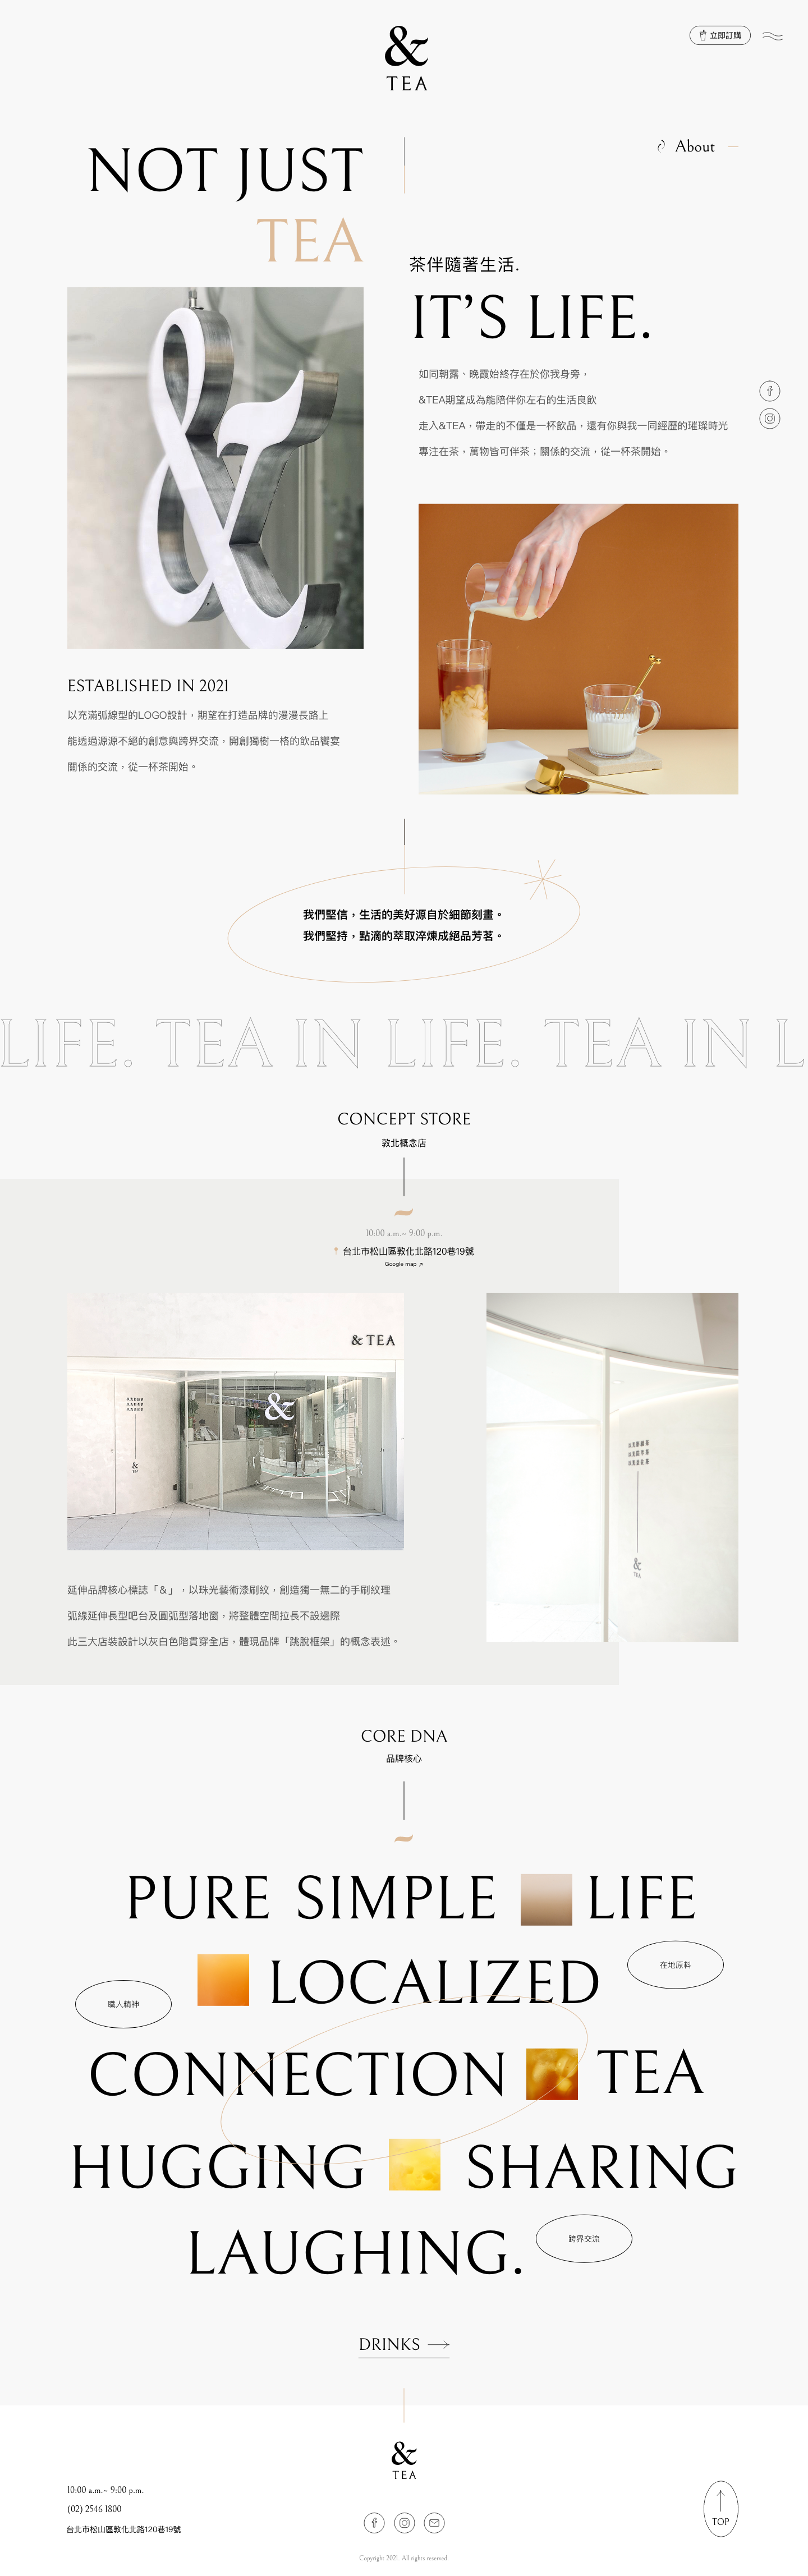 網站設計作品 - Andtea 茶飲網站設計頁面